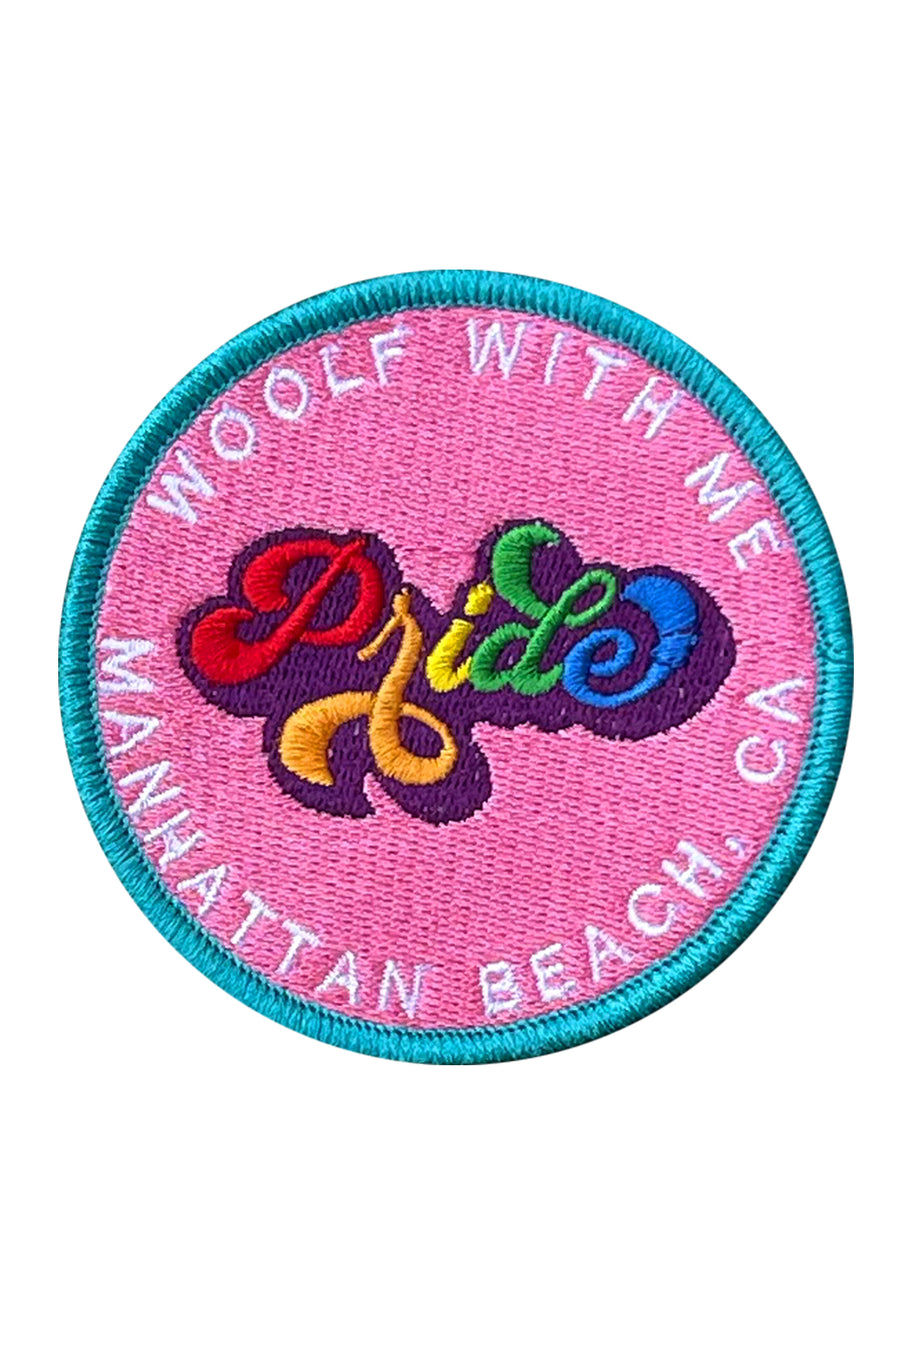 Velcro Patch Pride Manhattan Beach, Ca